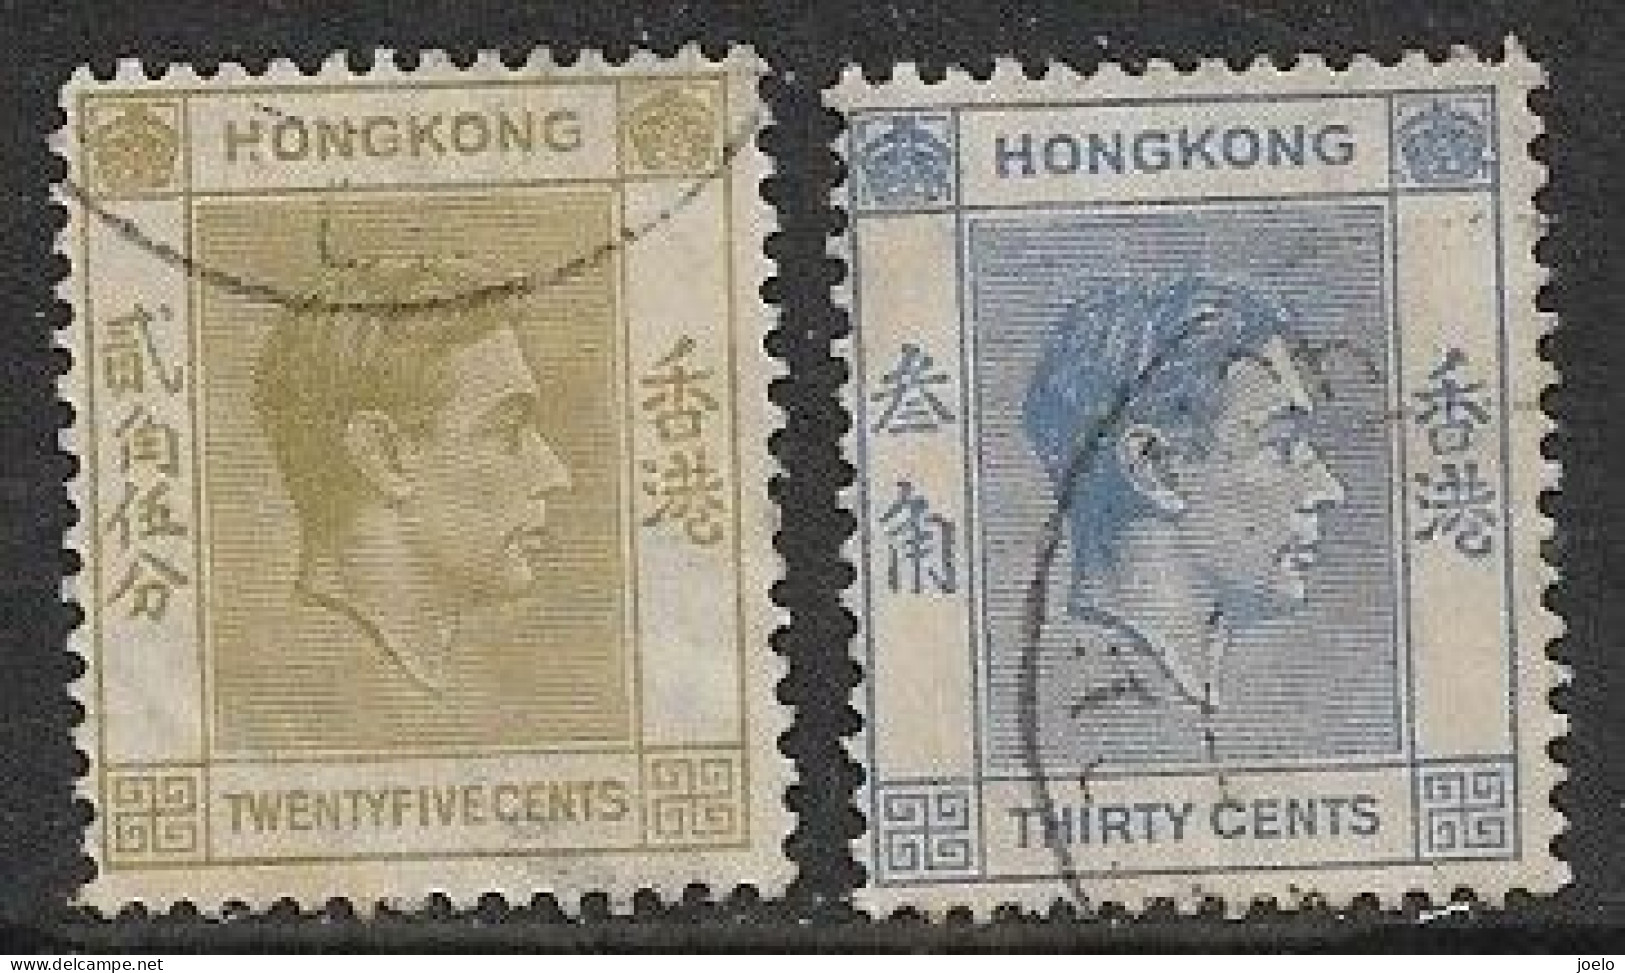 HONG KONG KGVl 1938 DEFINITIVES 25c OLIVE & 30c BLUE PAIR - Gebraucht